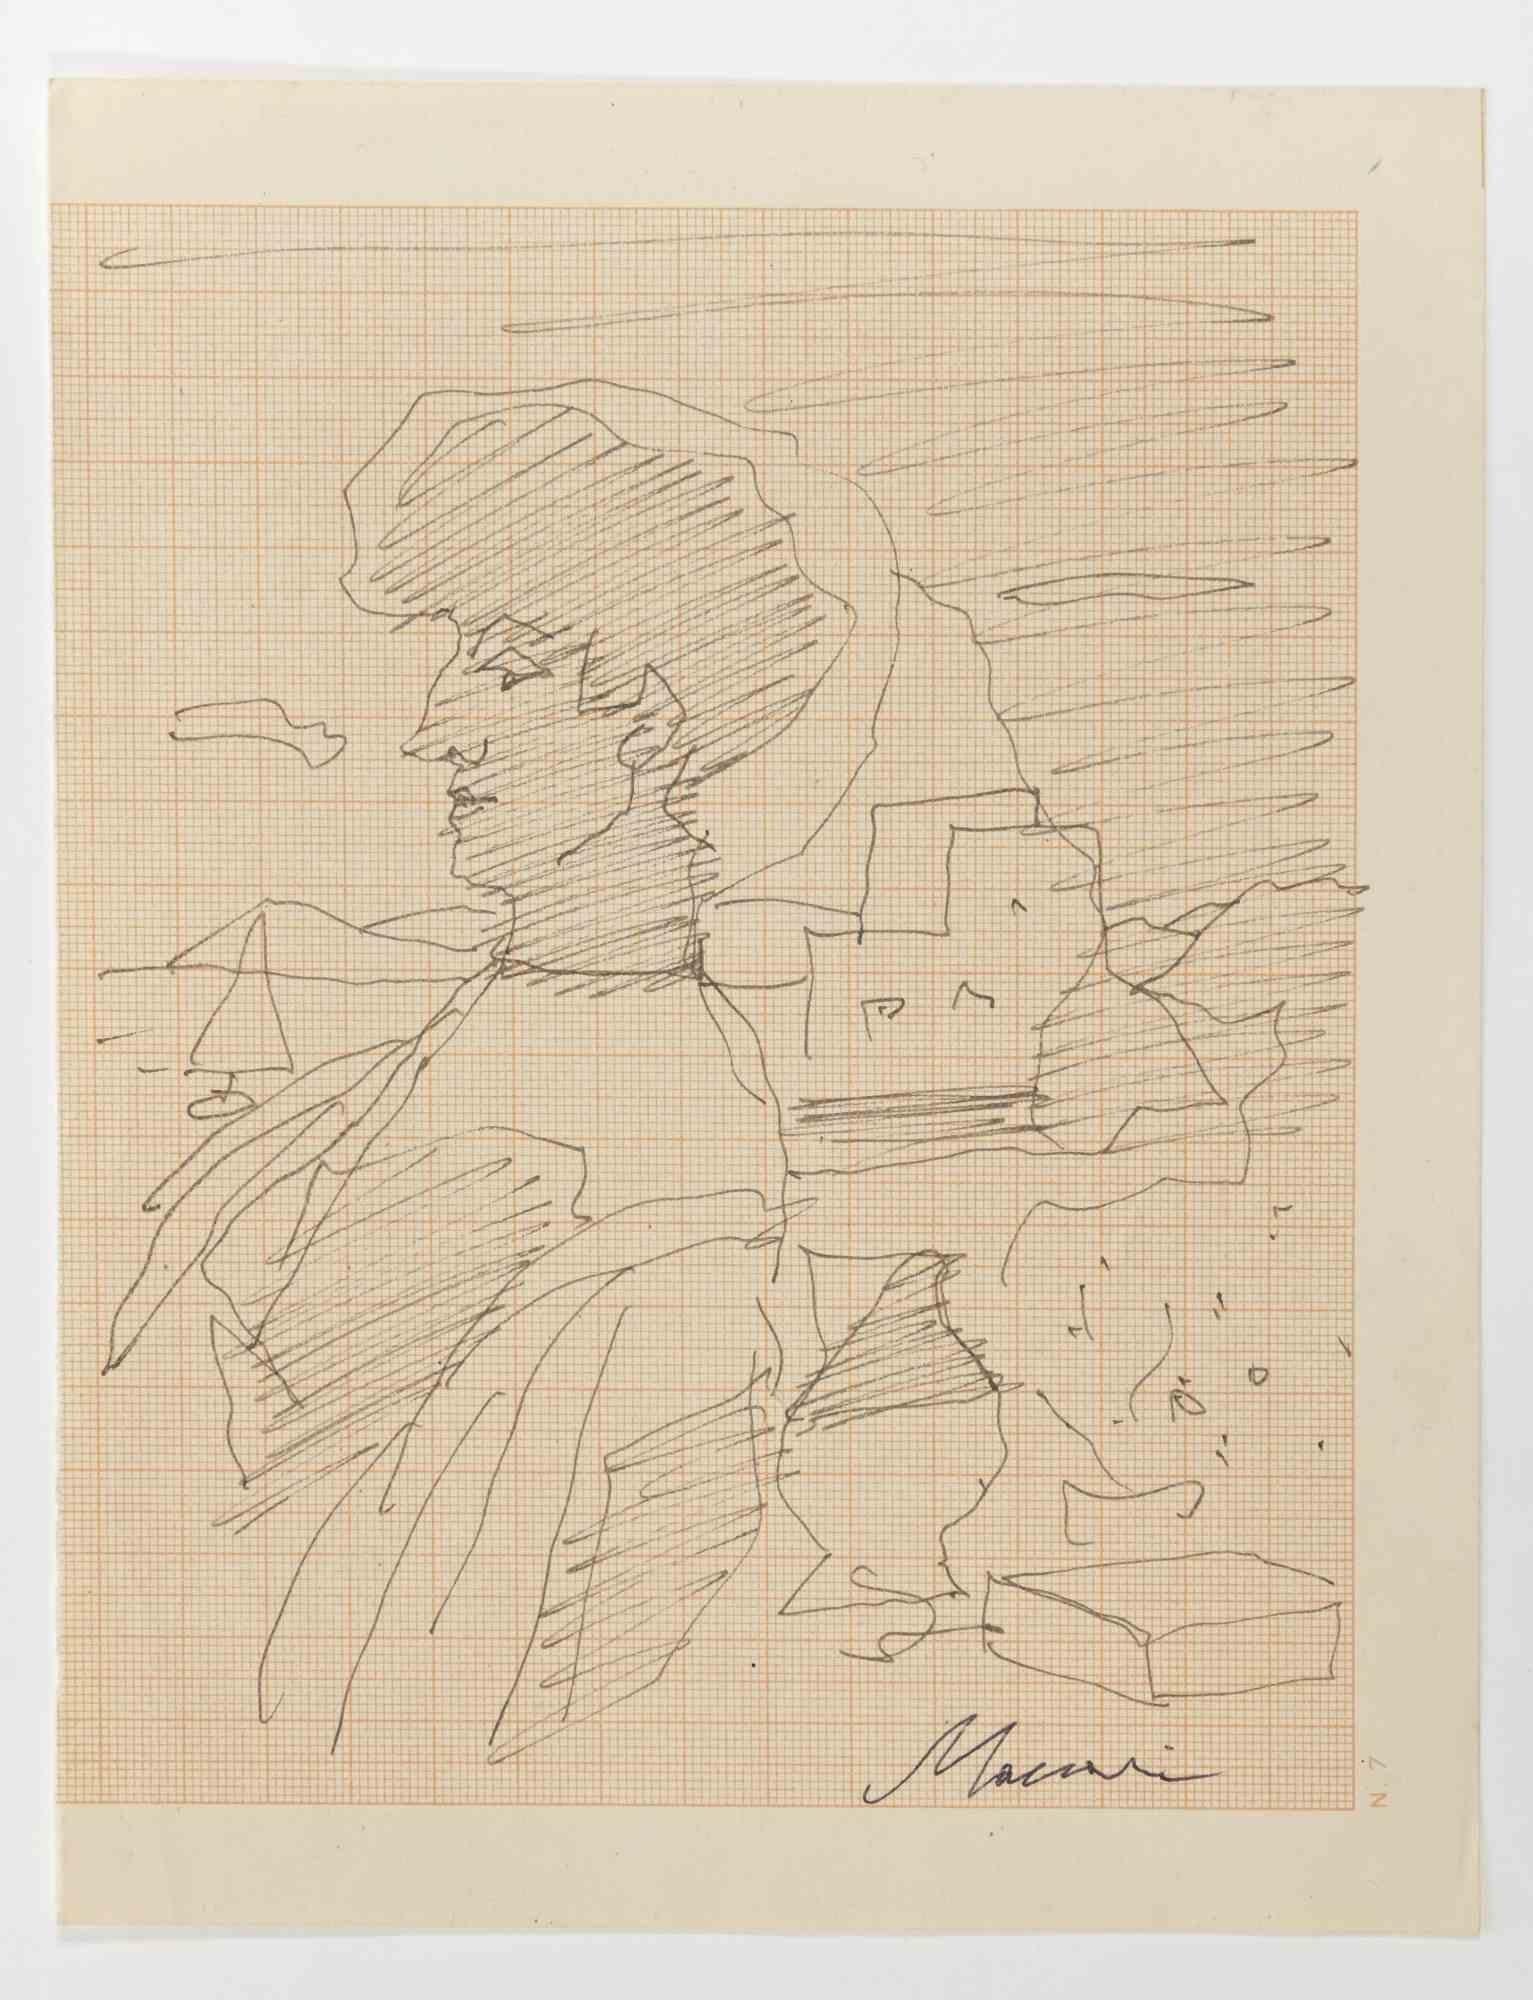 Frau in der Landschaft ist eine Federzeichnung realisiert von Mino Maccari  (1924-1989) in den 1960er Jahren.

Handsigniert am unteren Rand.

Guter Zustand.

Mino Maccari (Siena, 1924-Rom, 16. Juni 1989) war ein italienischer Schriftsteller, Maler,